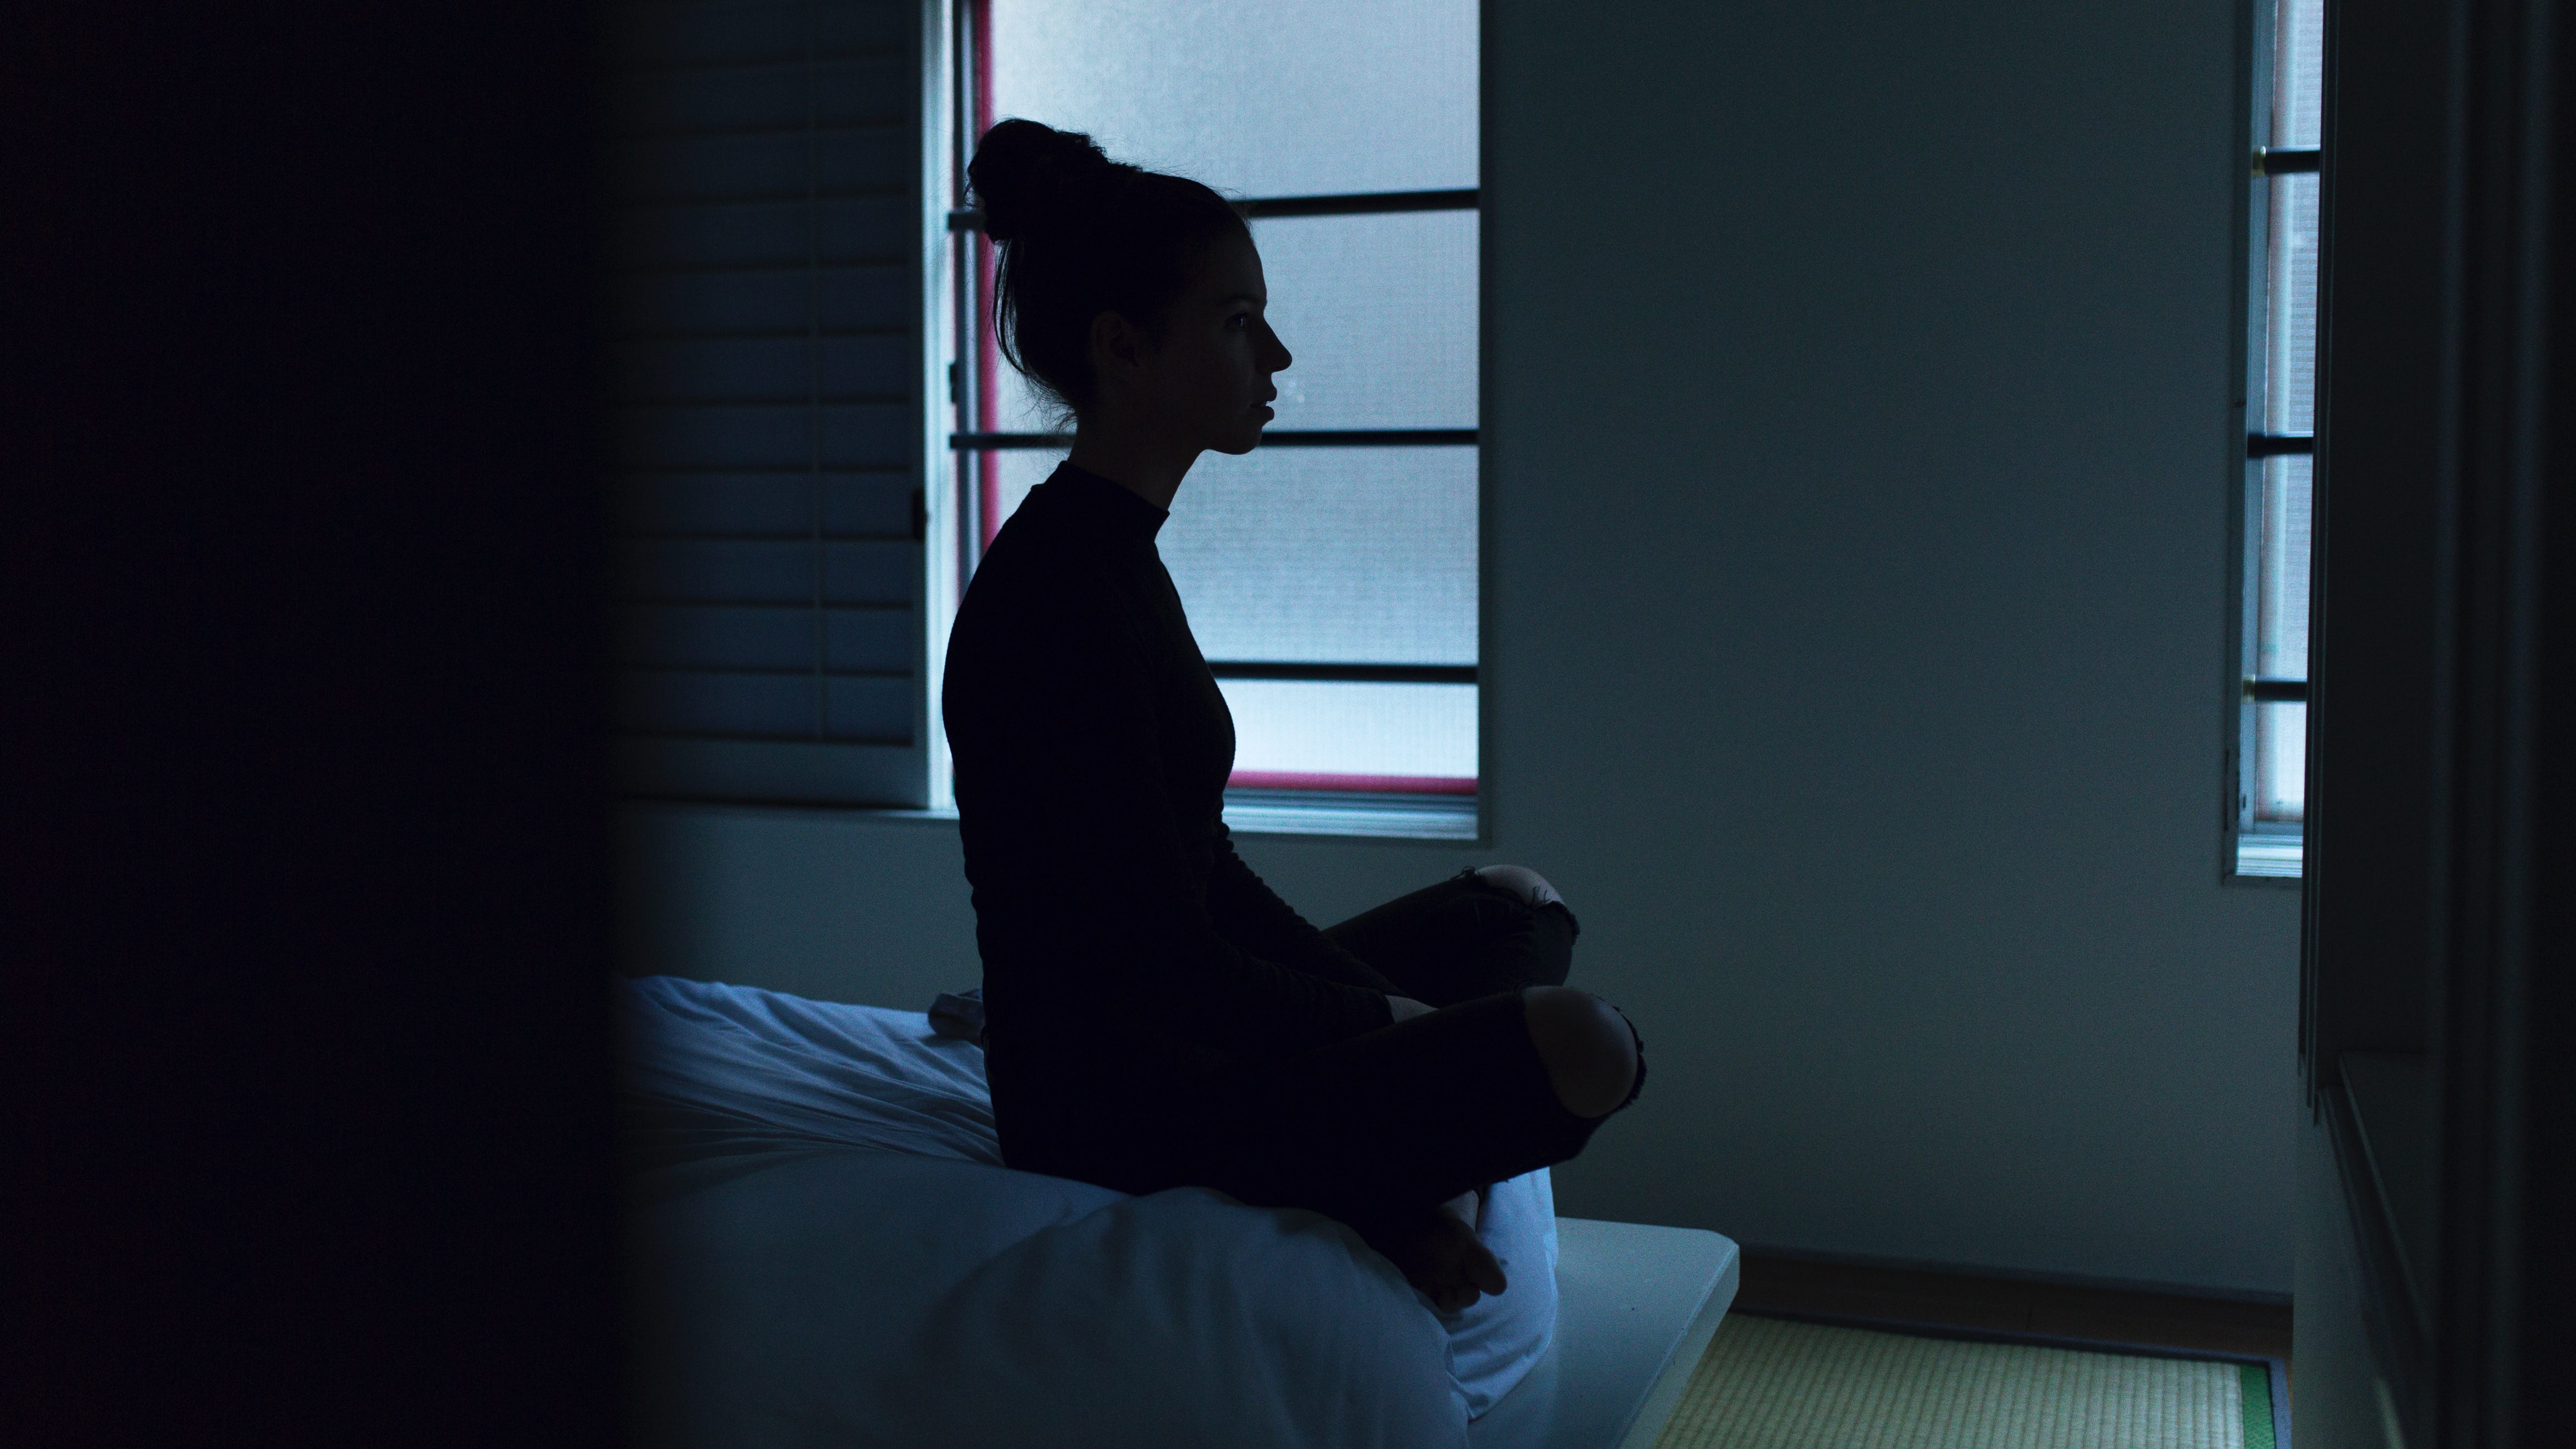 Woman sitting crosslegged on edge of bed in dark room; image by Ben Blennerhassett, via Unsplash.com.